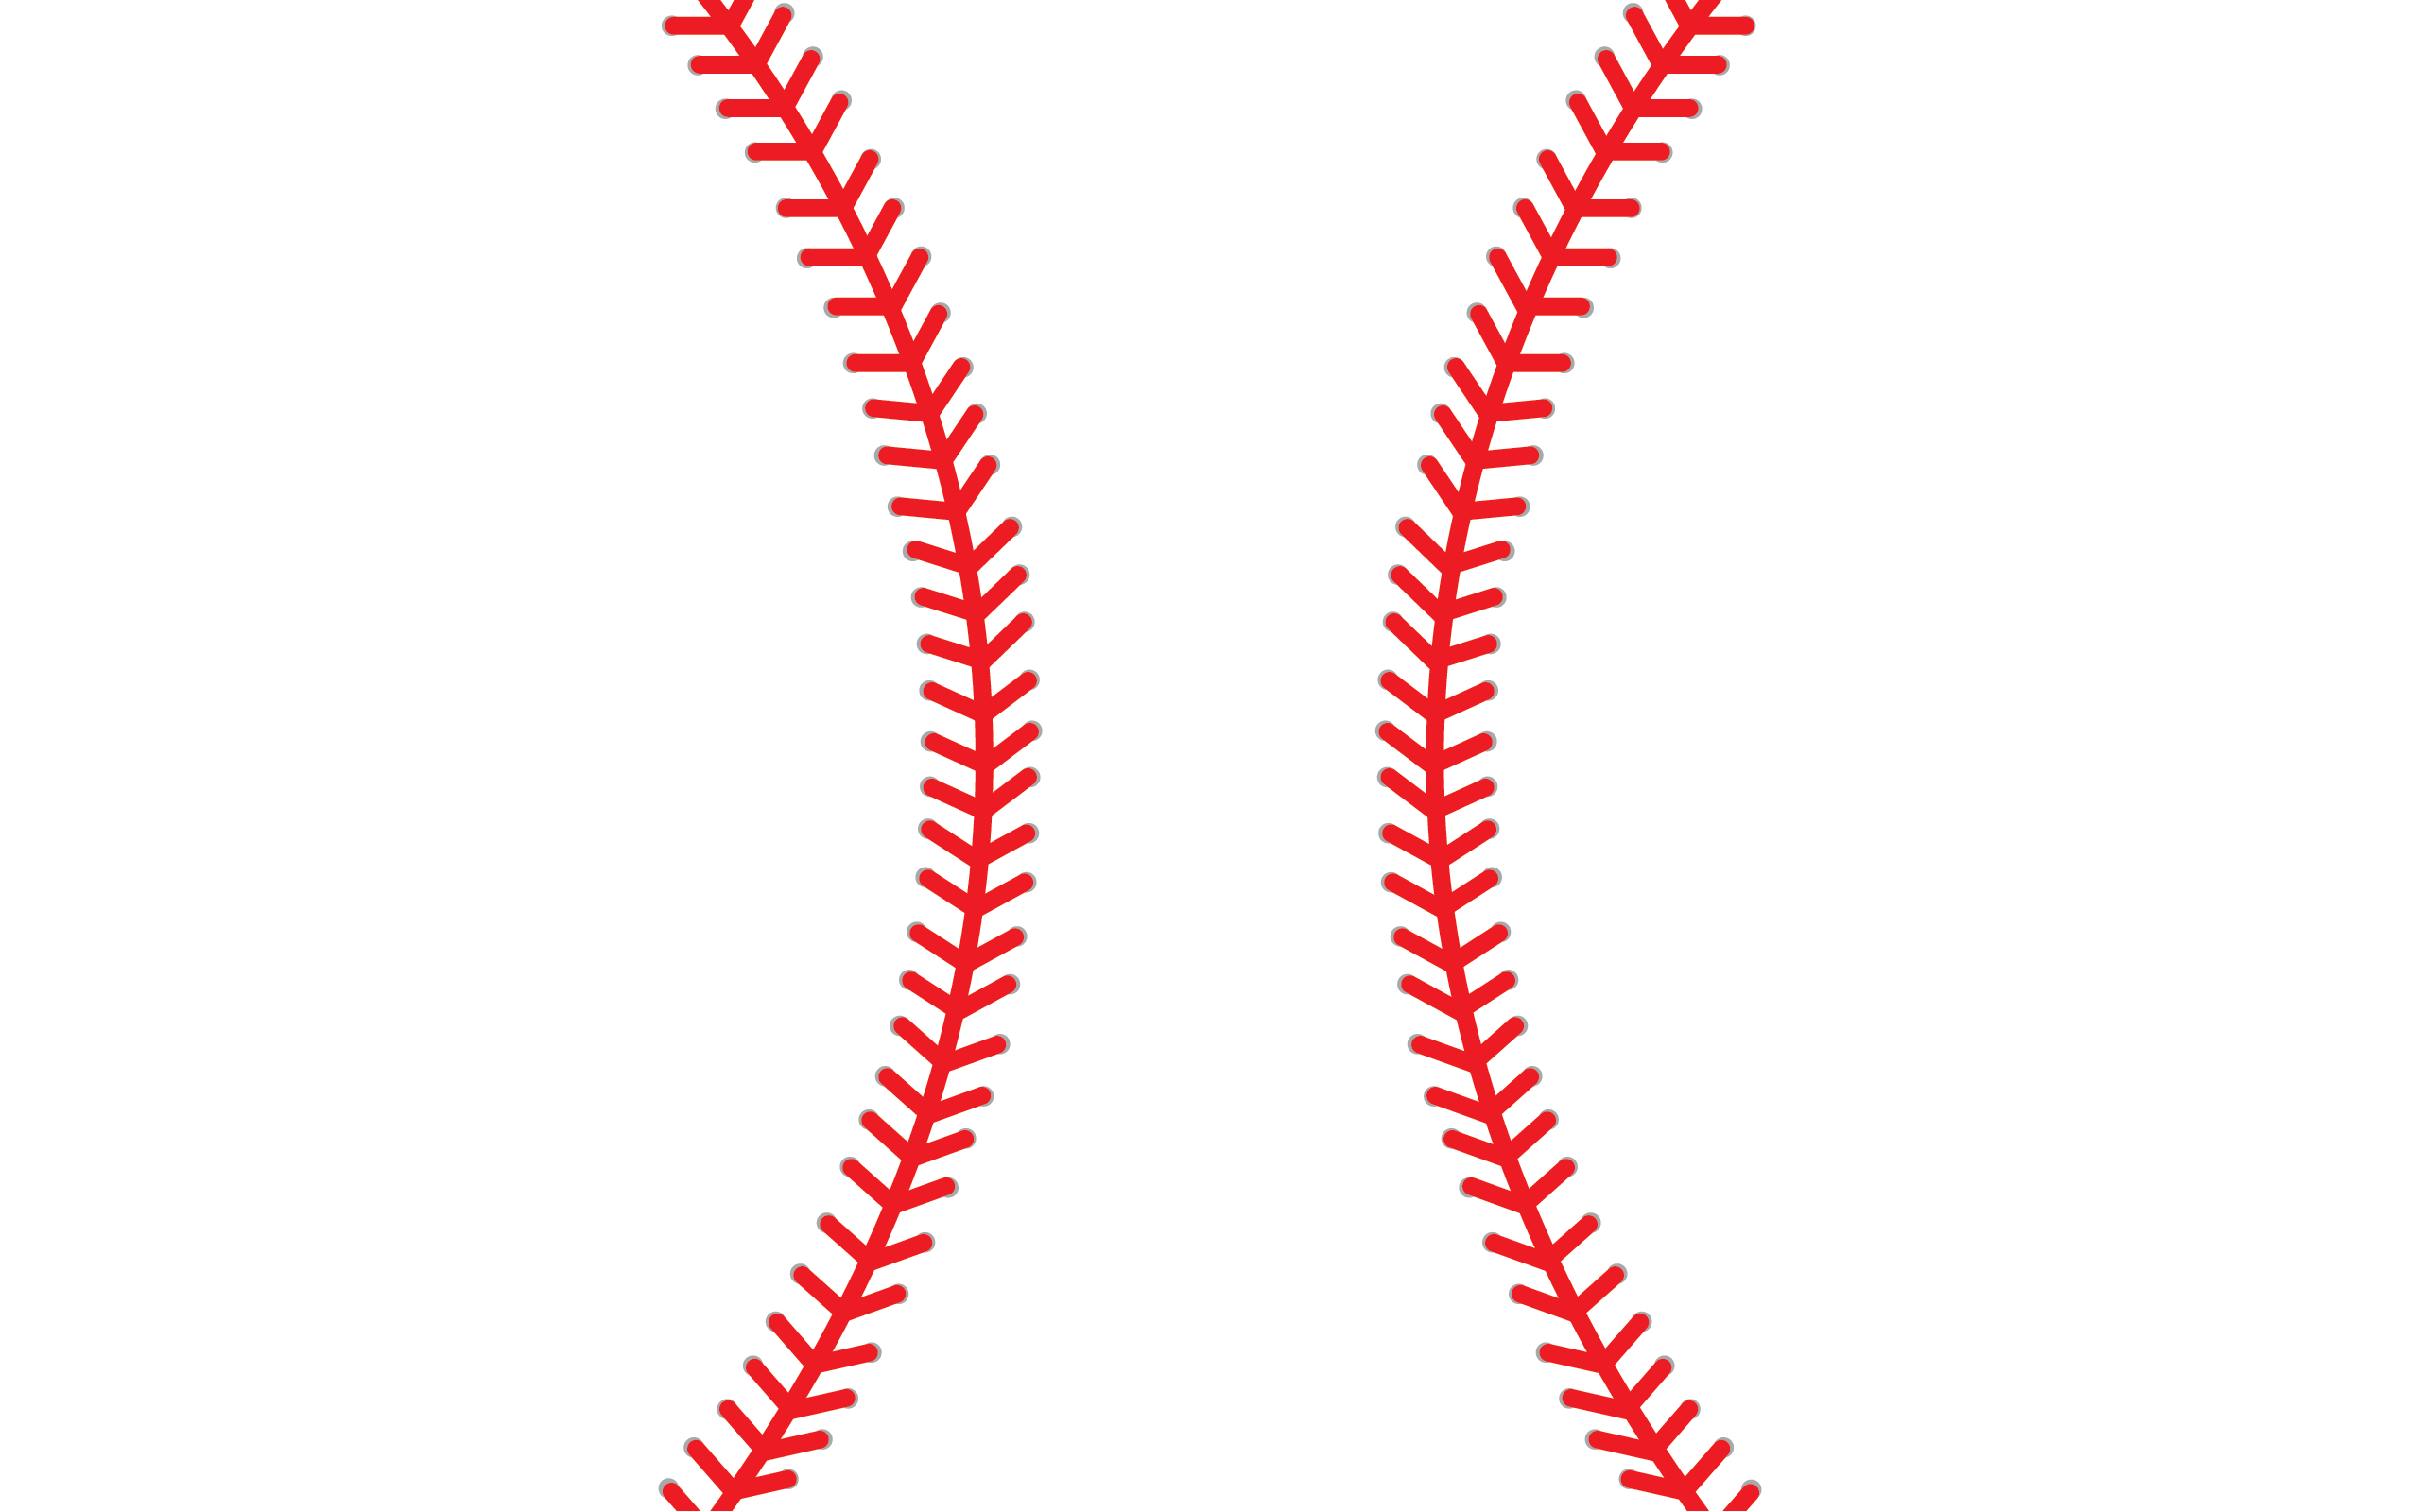 Baseball stitches clipart free